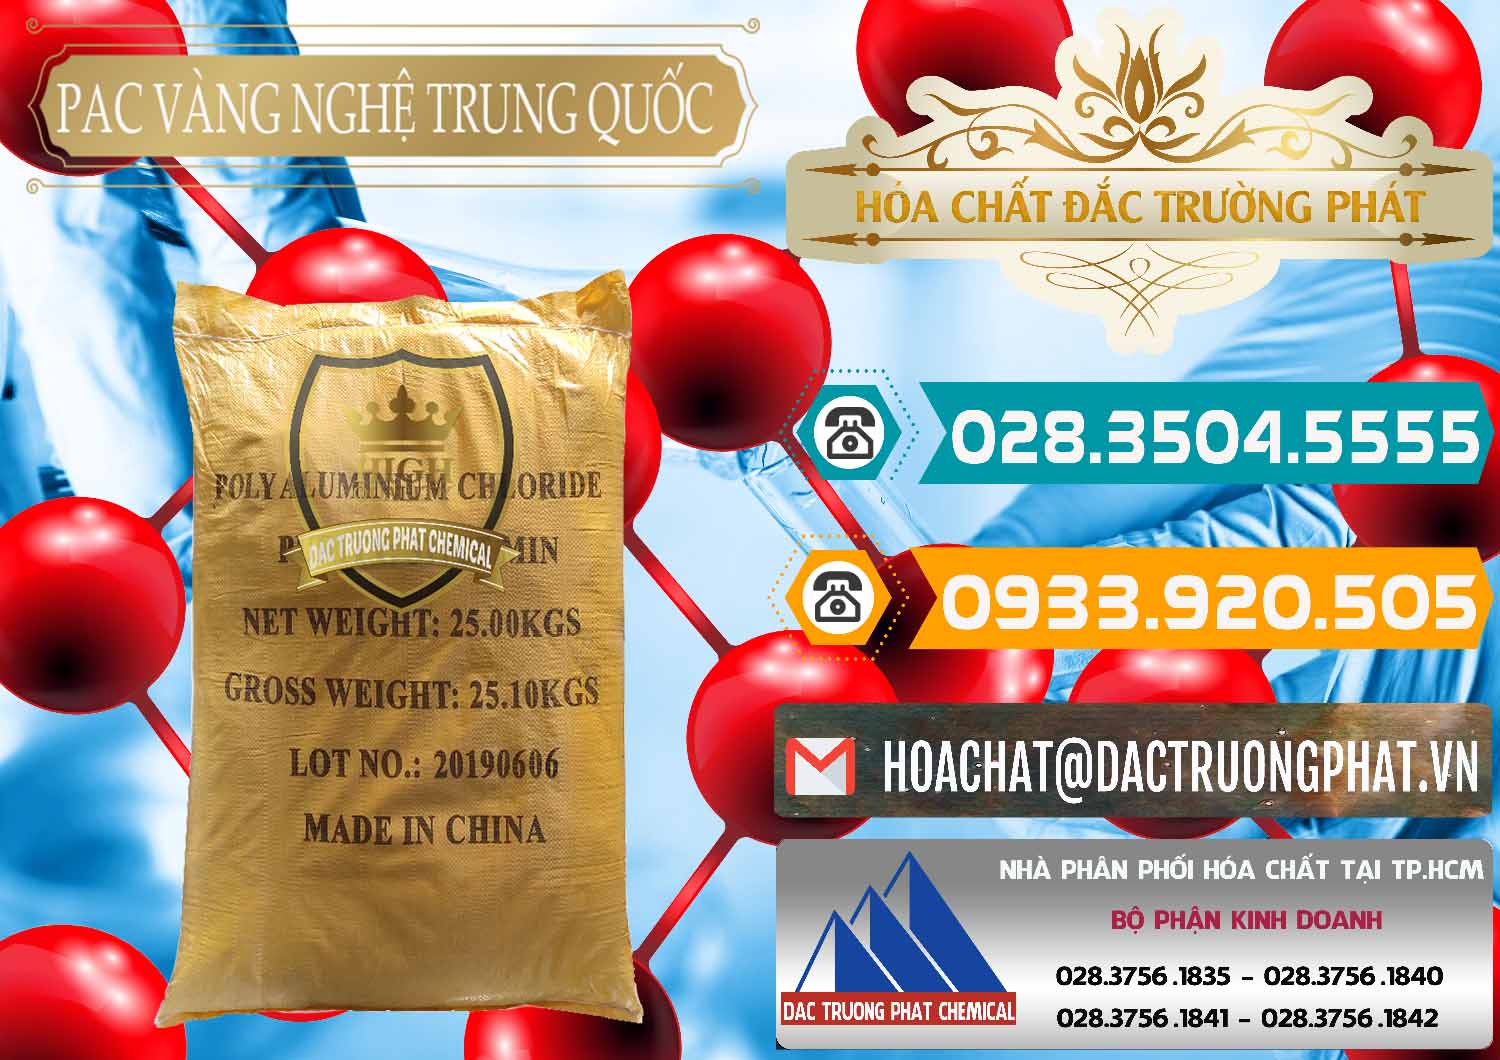 Đơn vị chuyên kinh doanh - bán PAC - Polyaluminium Chloride Vàng Nghệ Trung Quốc China - 0110 - Nơi chuyên cung cấp - kinh doanh hóa chất tại TP.HCM - congtyhoachat.vn